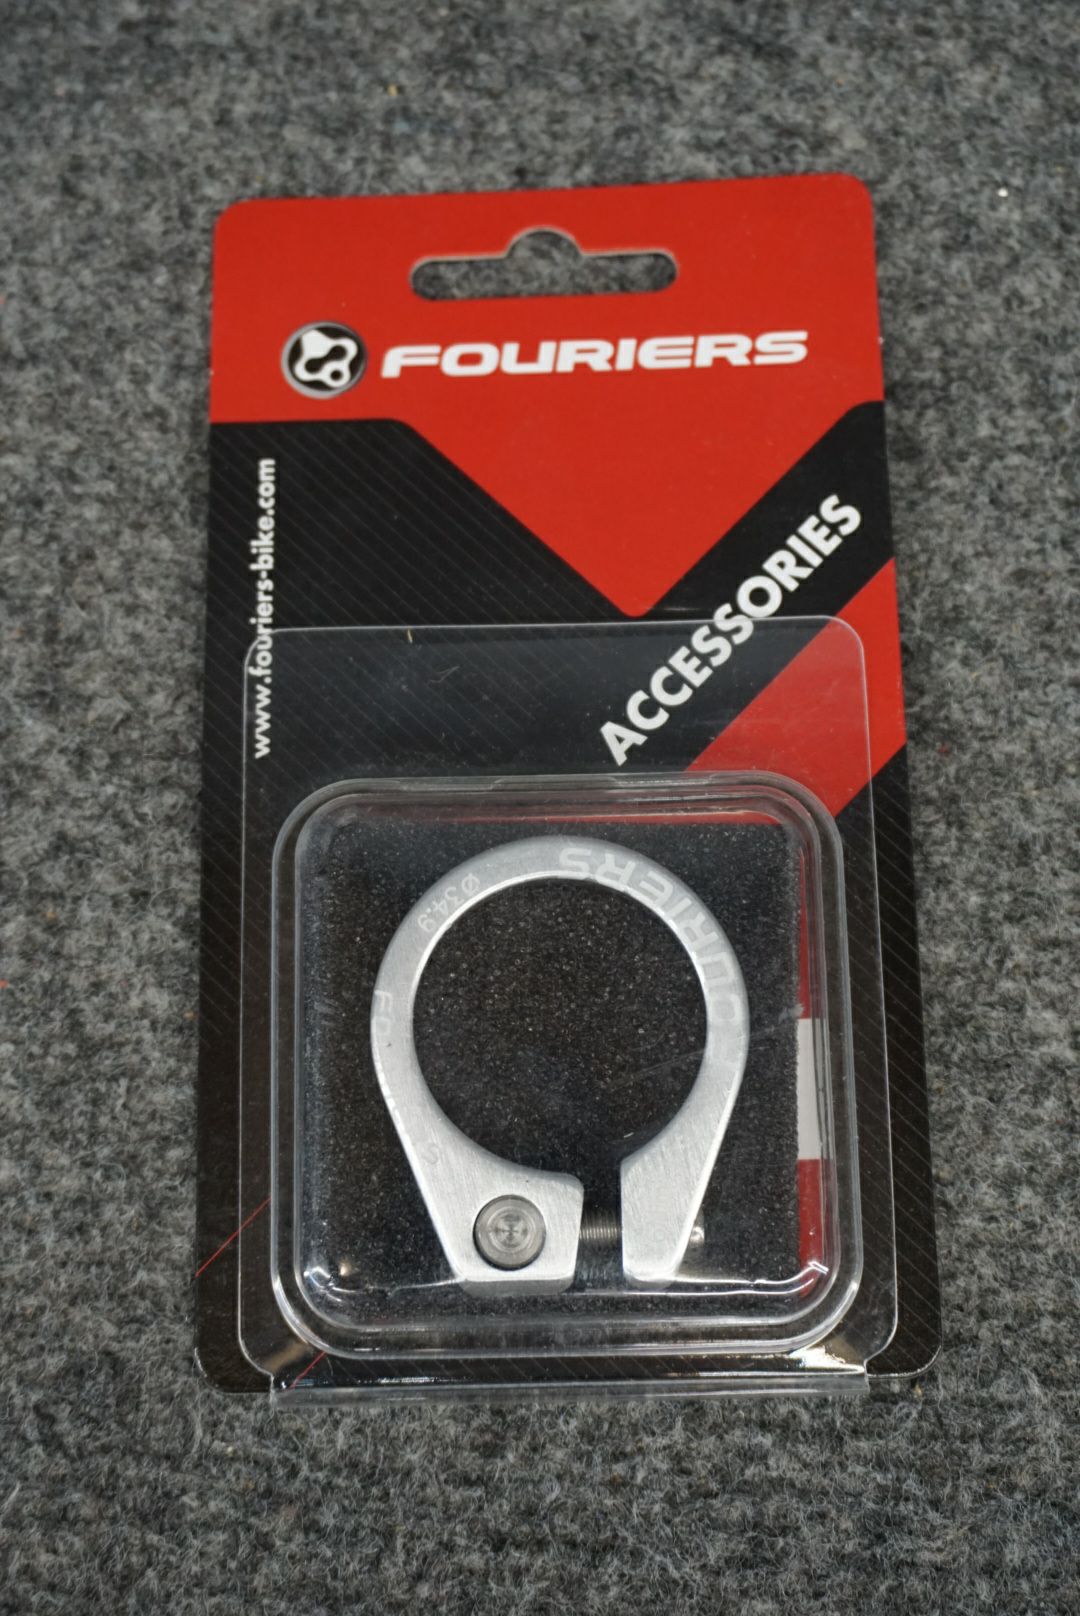 Fouriers Diameter 34.9mm Seatpost Clamp